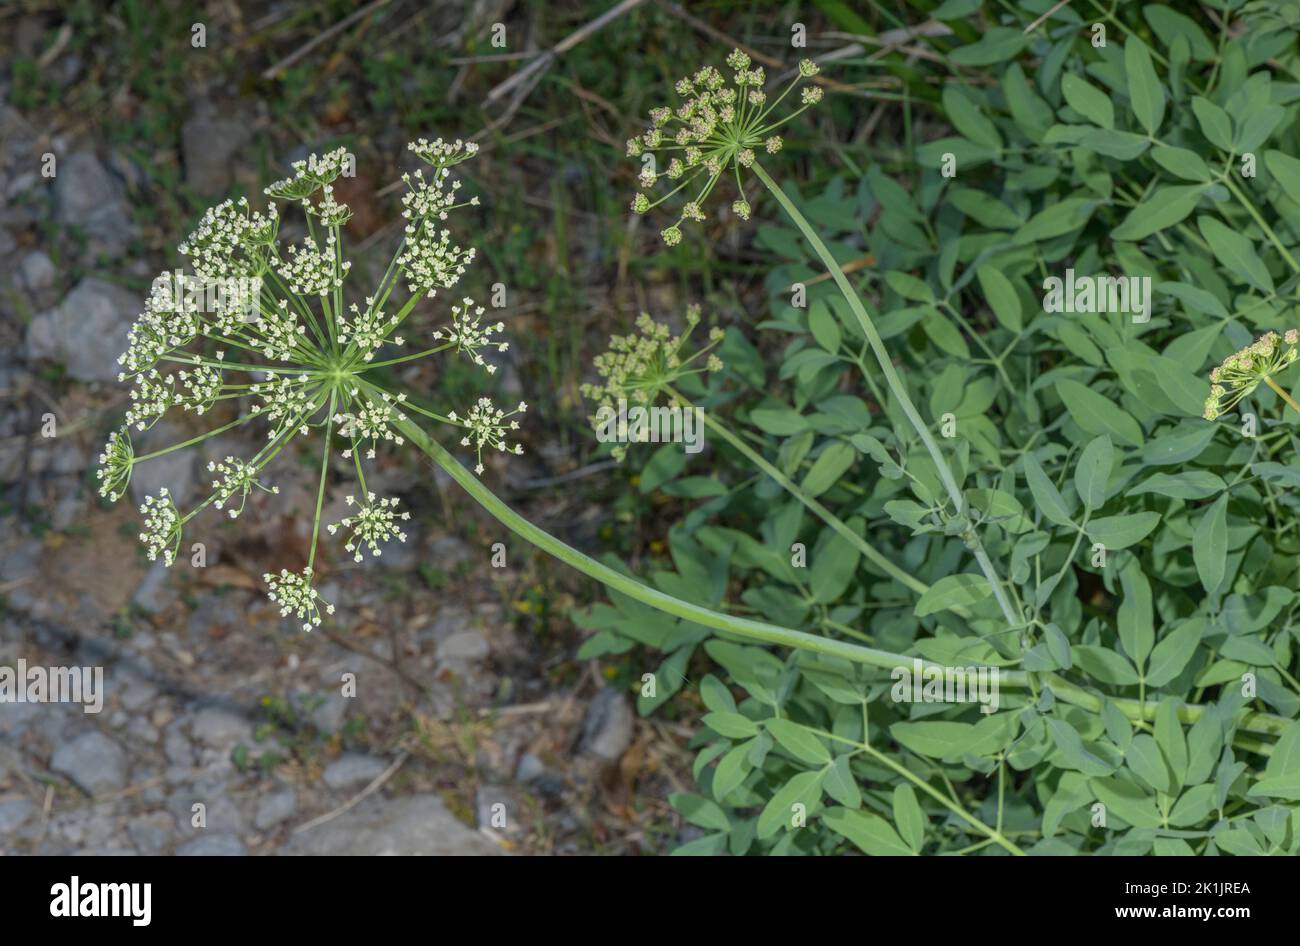 Sermountain, Laserpitium siler, in flower. Stock Photo